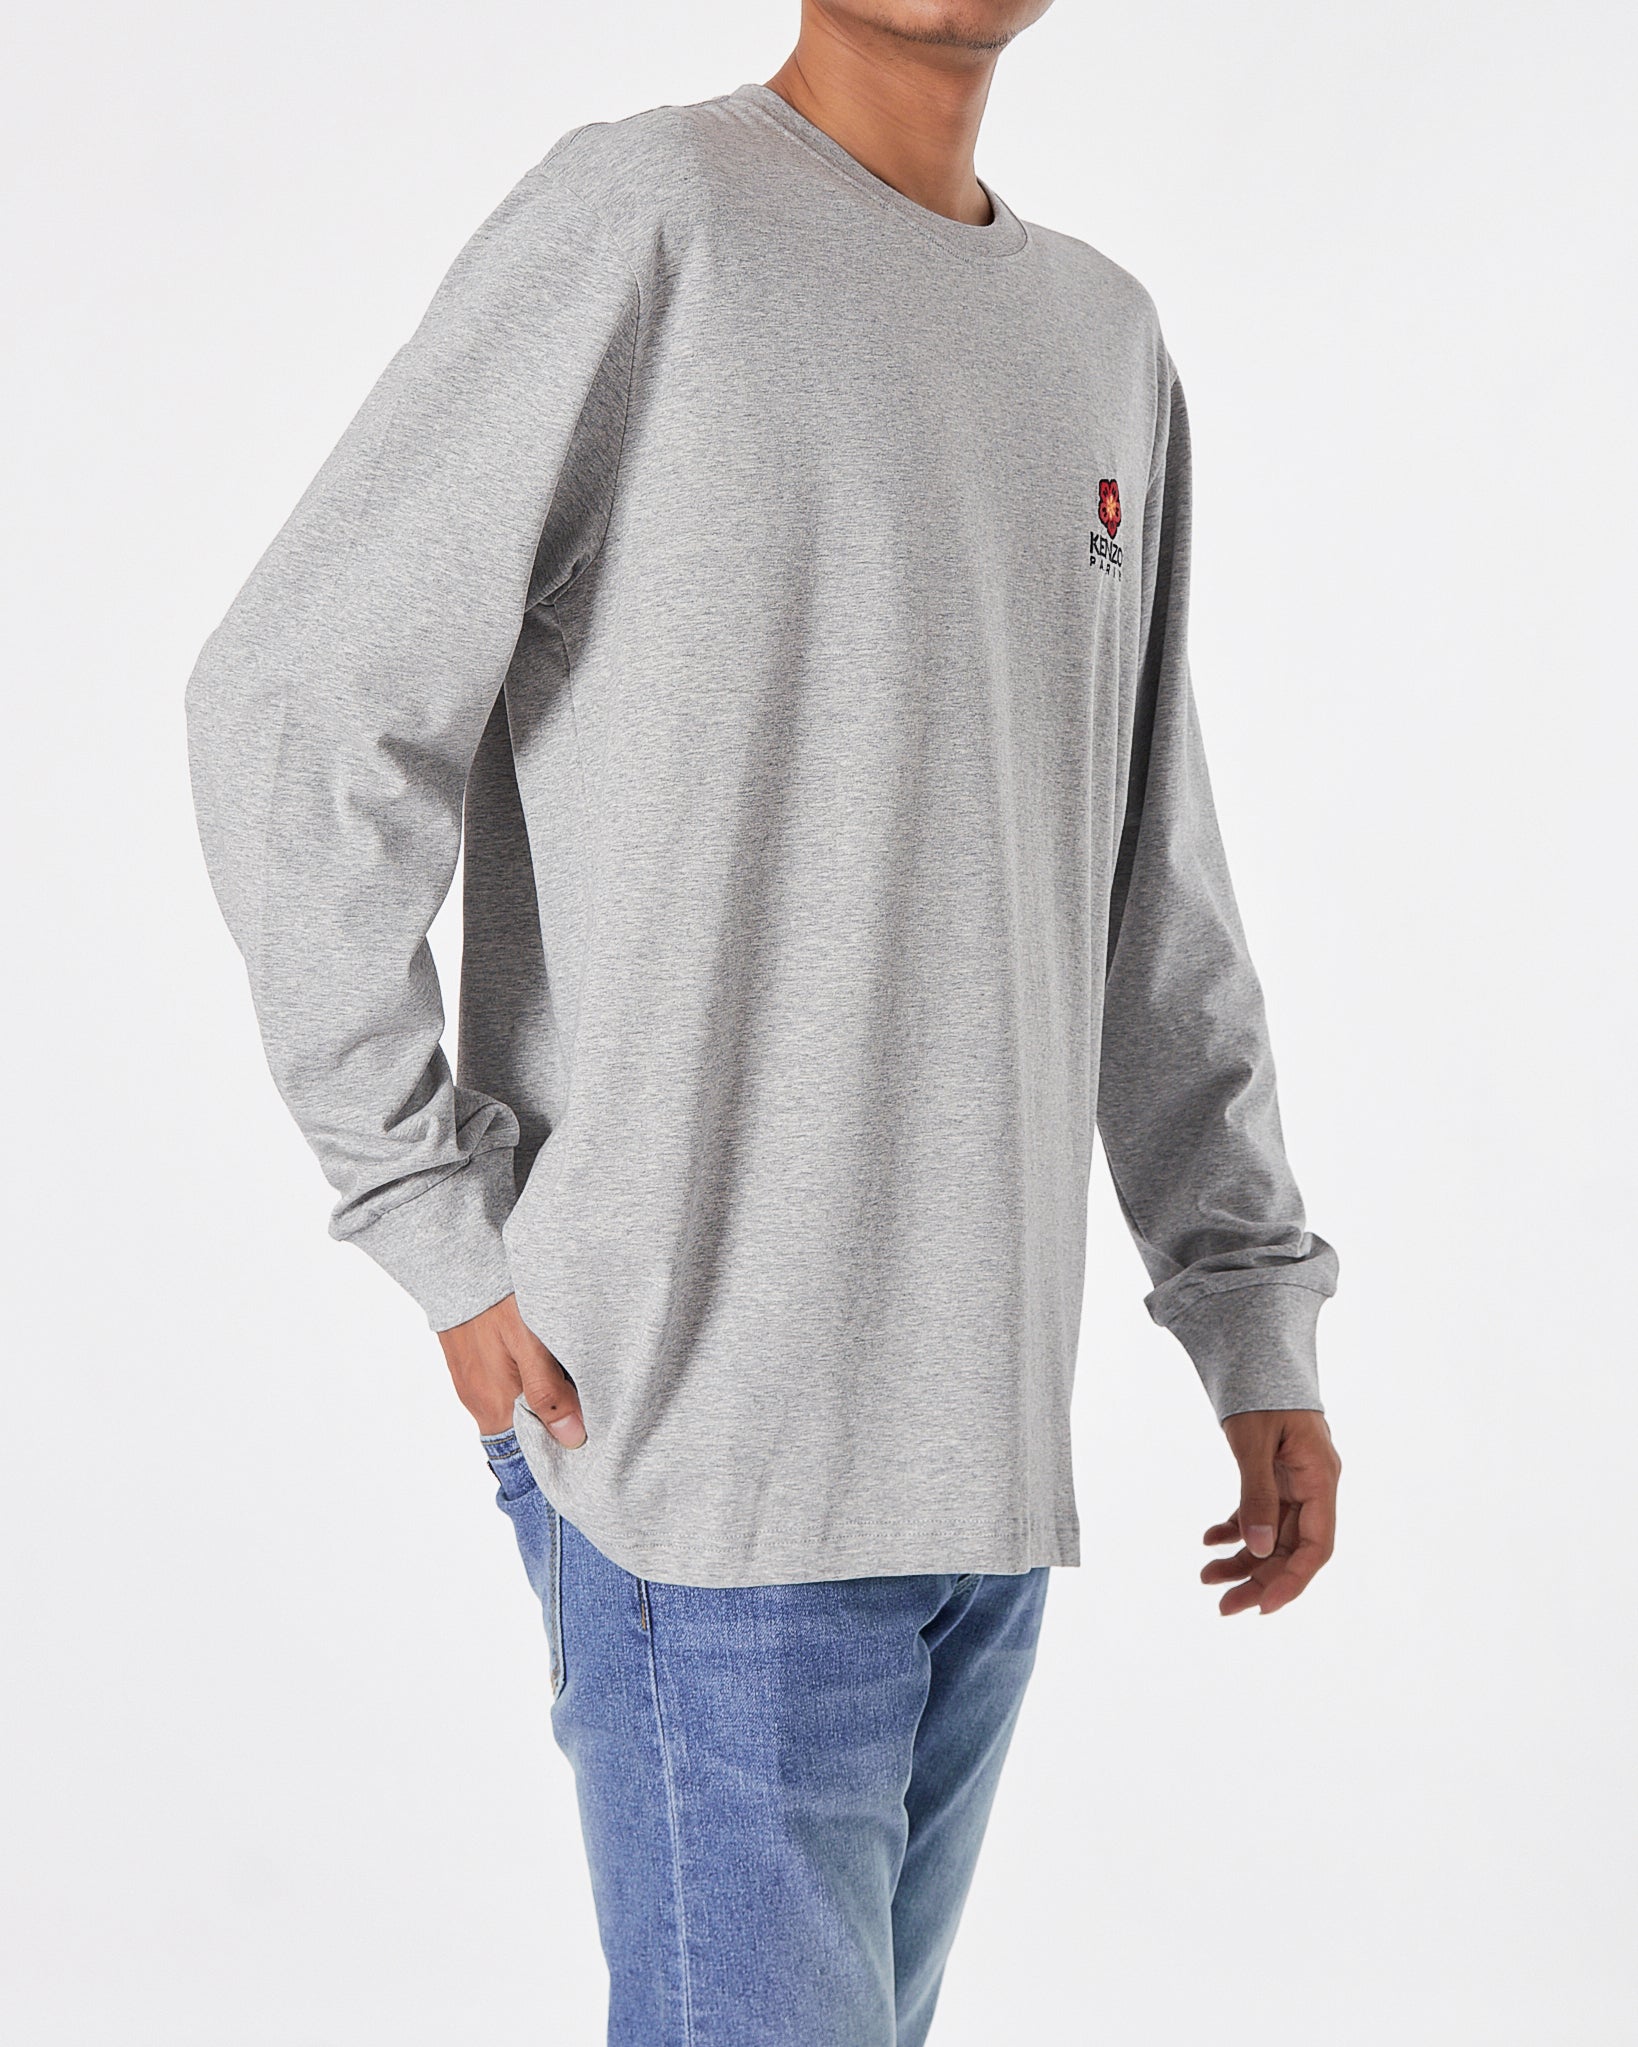 KEN Back Logo Printed Men Grey T-Shirt Long Sleeve 23.90